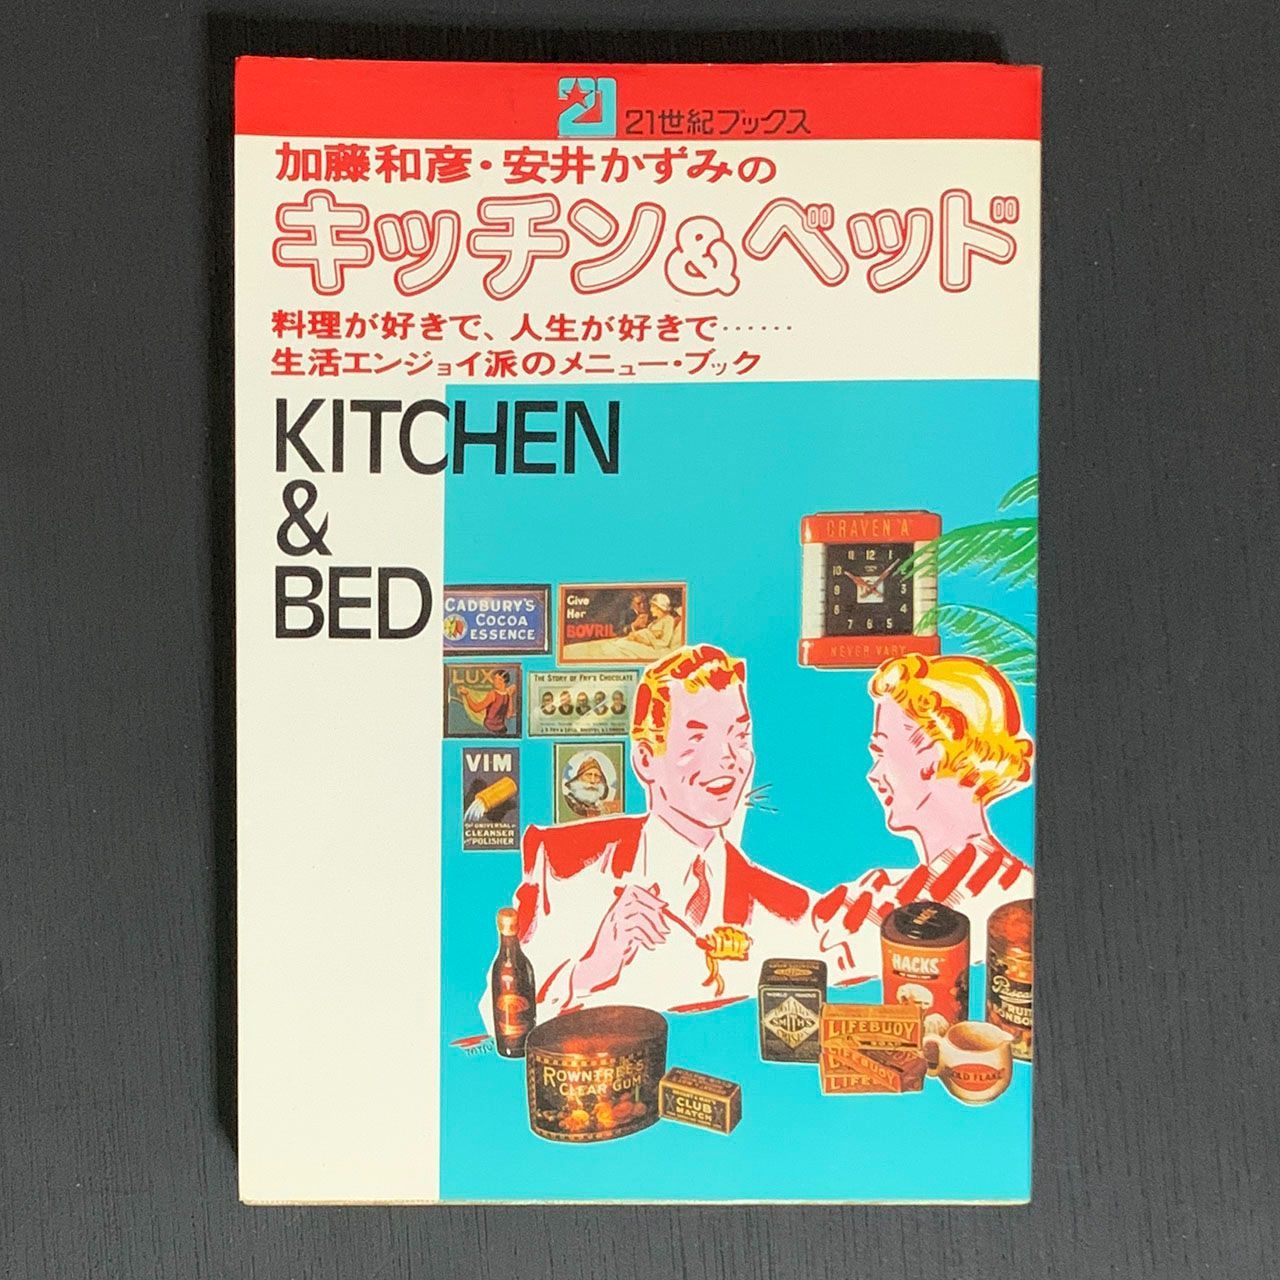 加藤和彦/安井かずみ レストラン3部作 - アート・デザイン・音楽